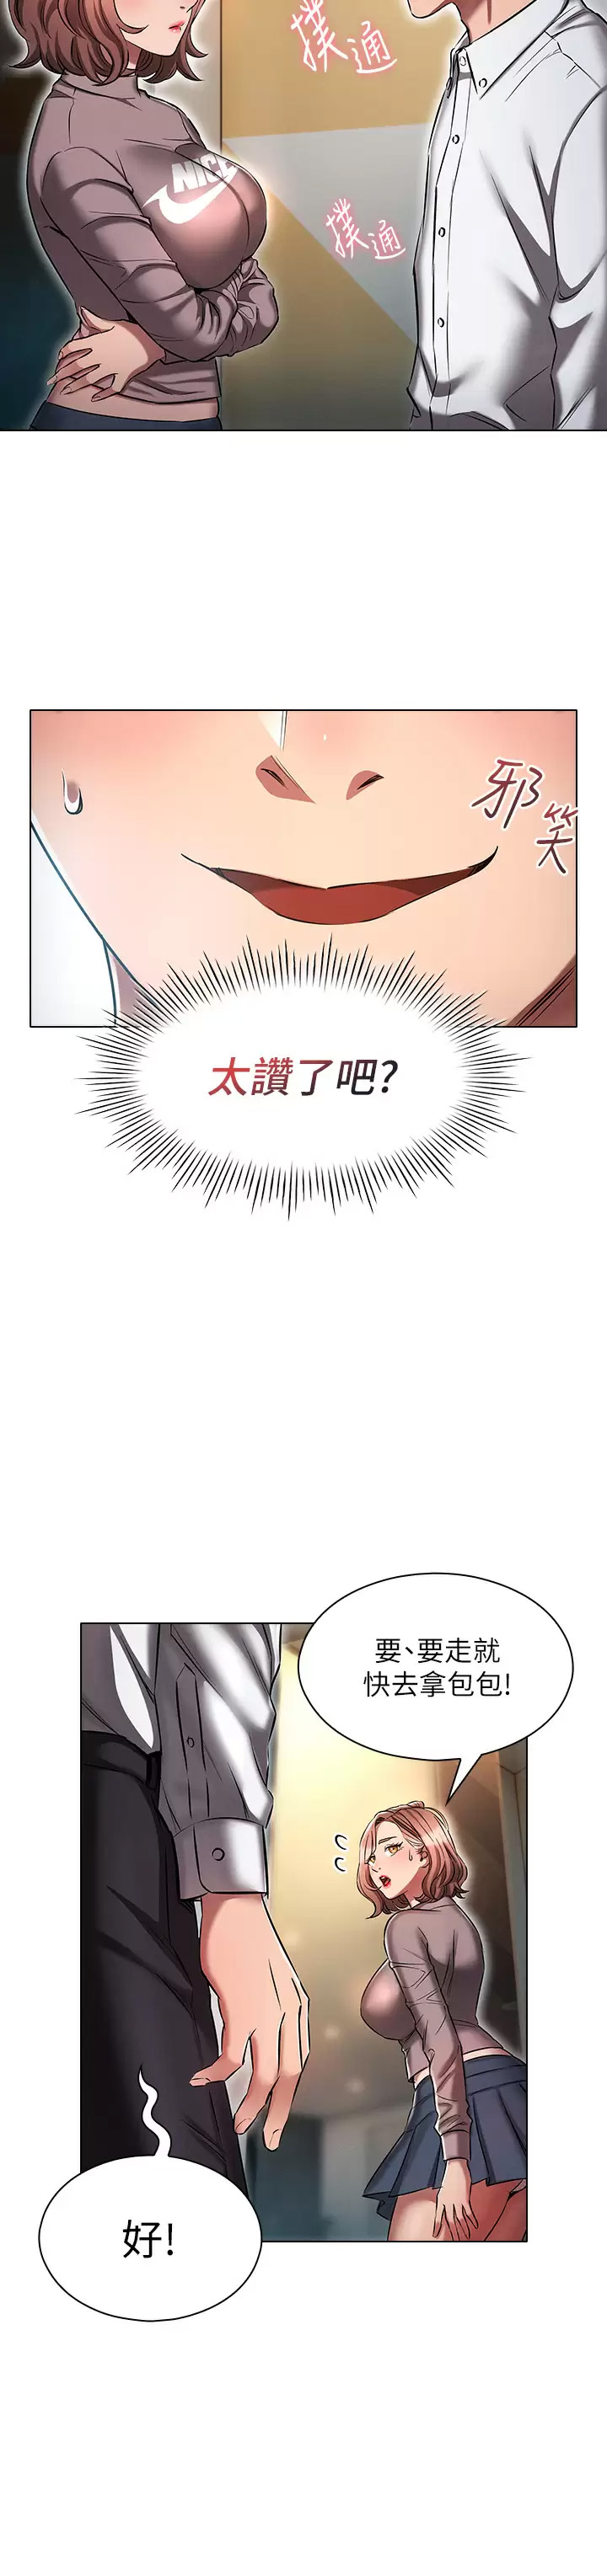 韩国污漫画 魯蛇的多重宇宙 第13话 满溢的暧昧情欲 7